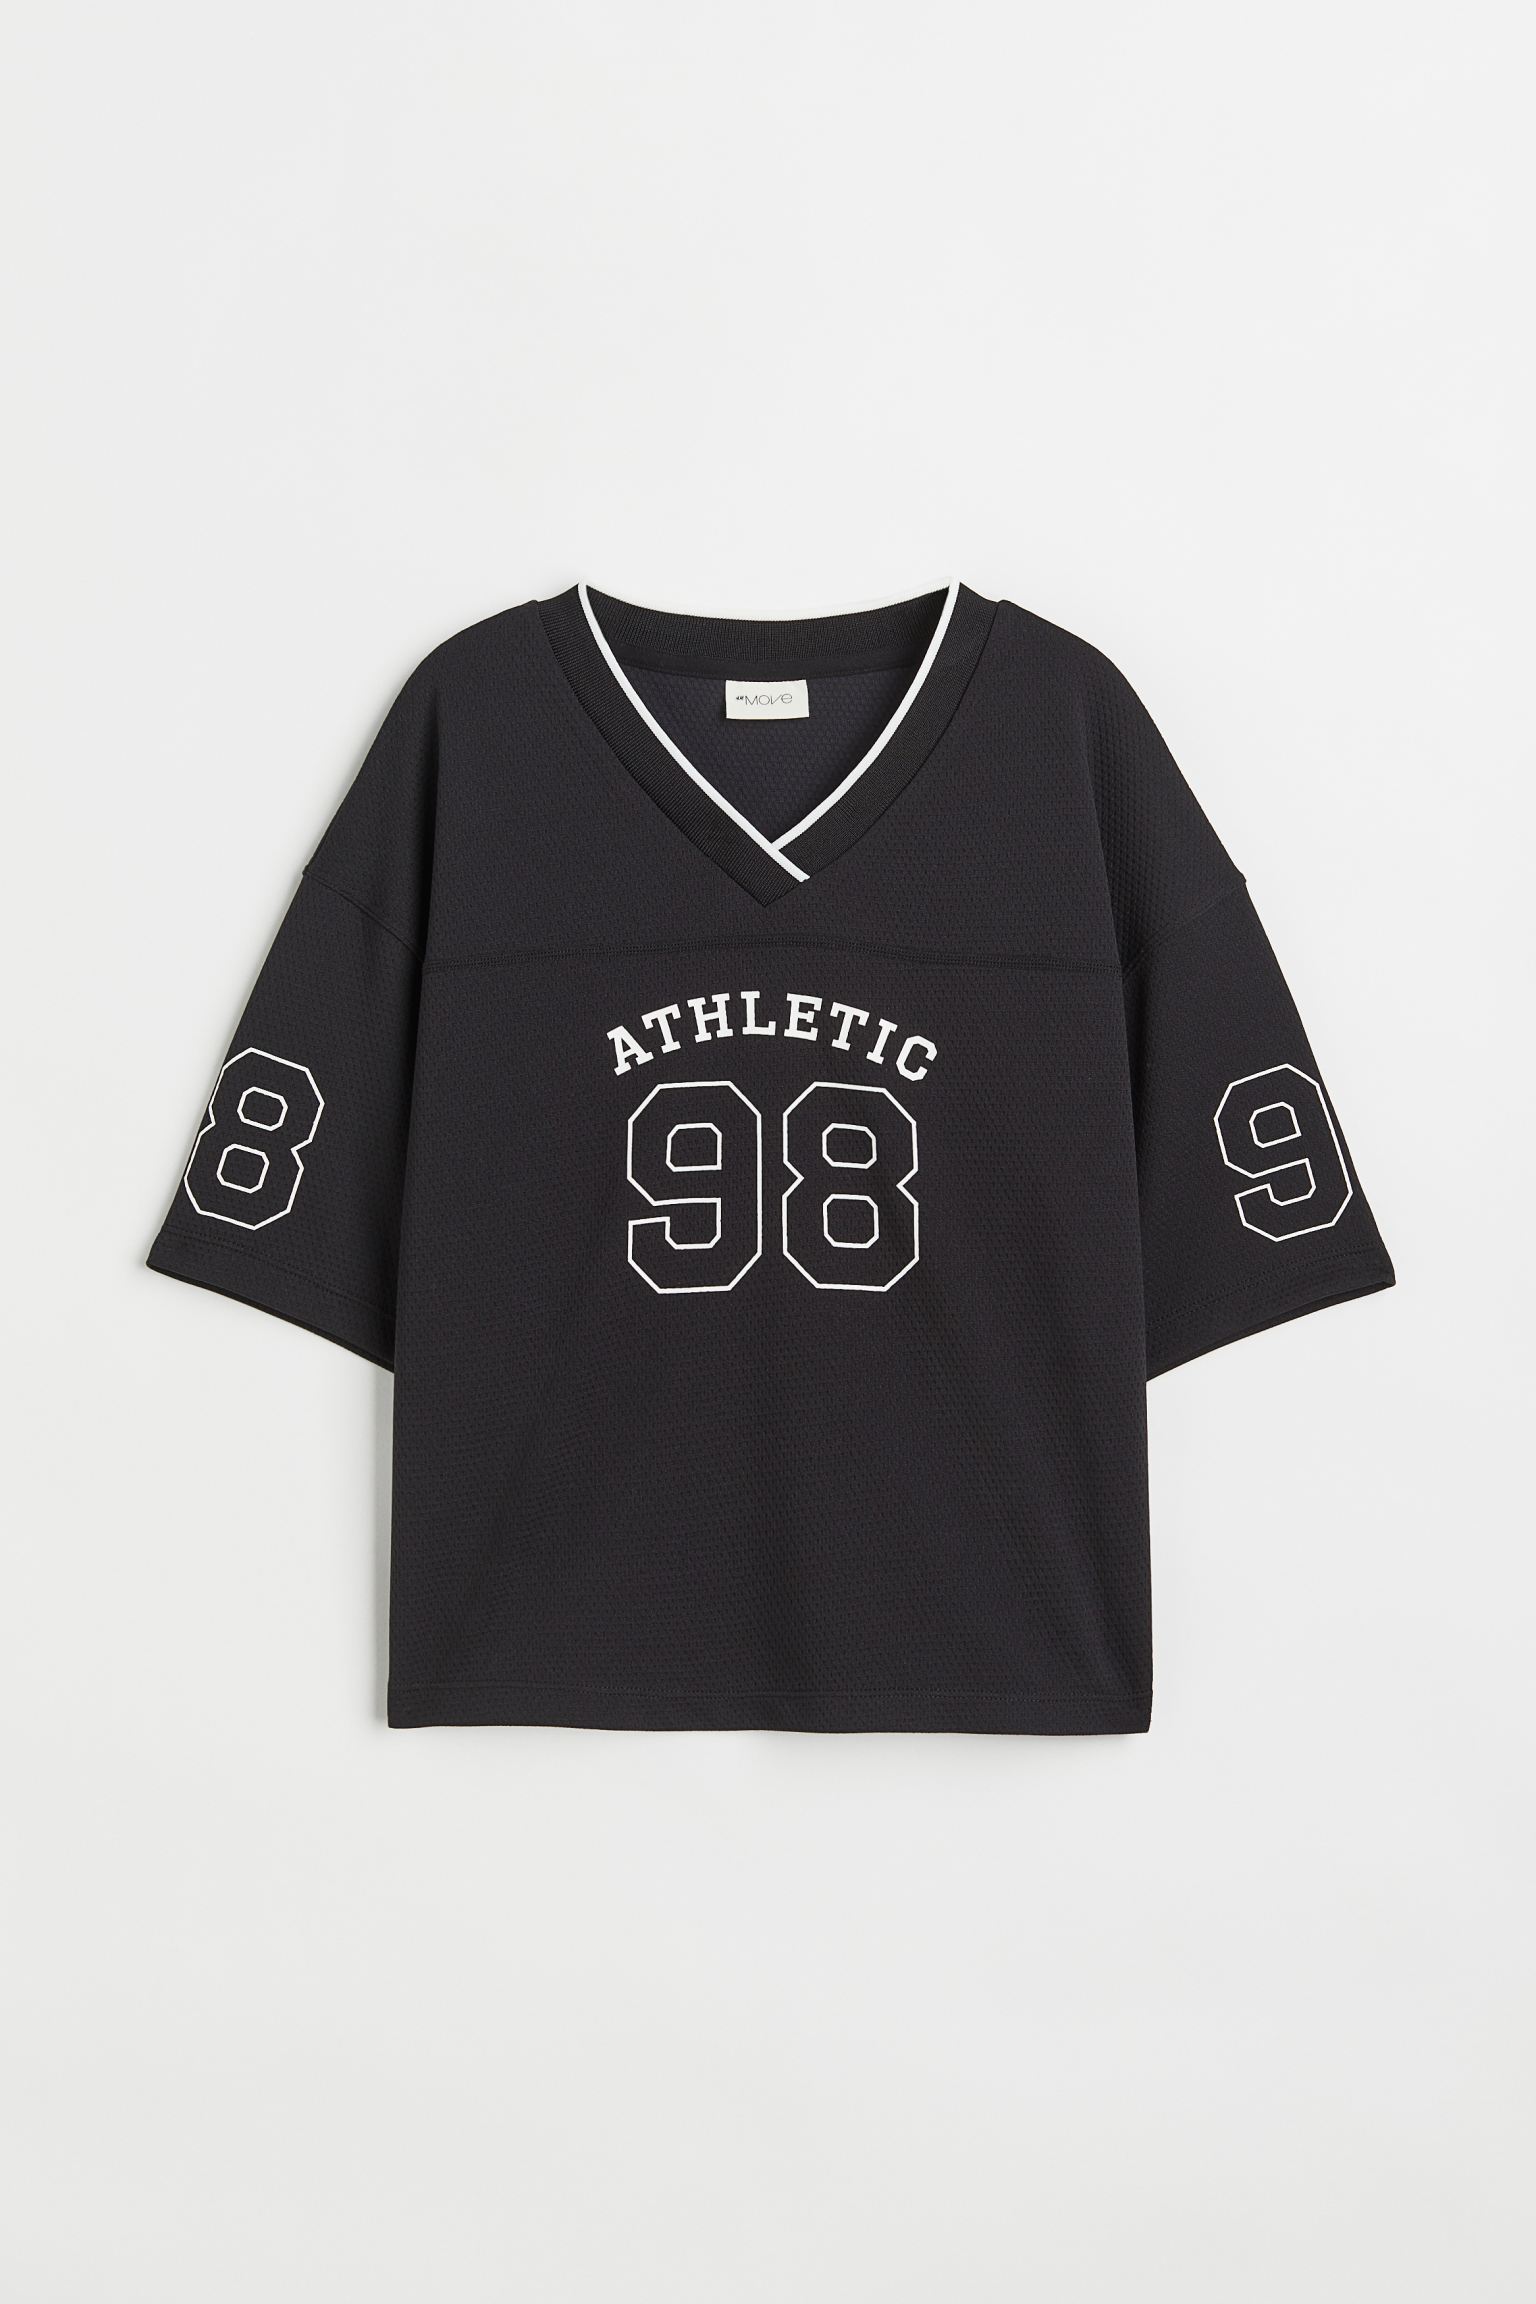 에이치앤엠 H&M Printed Basketball Shirt